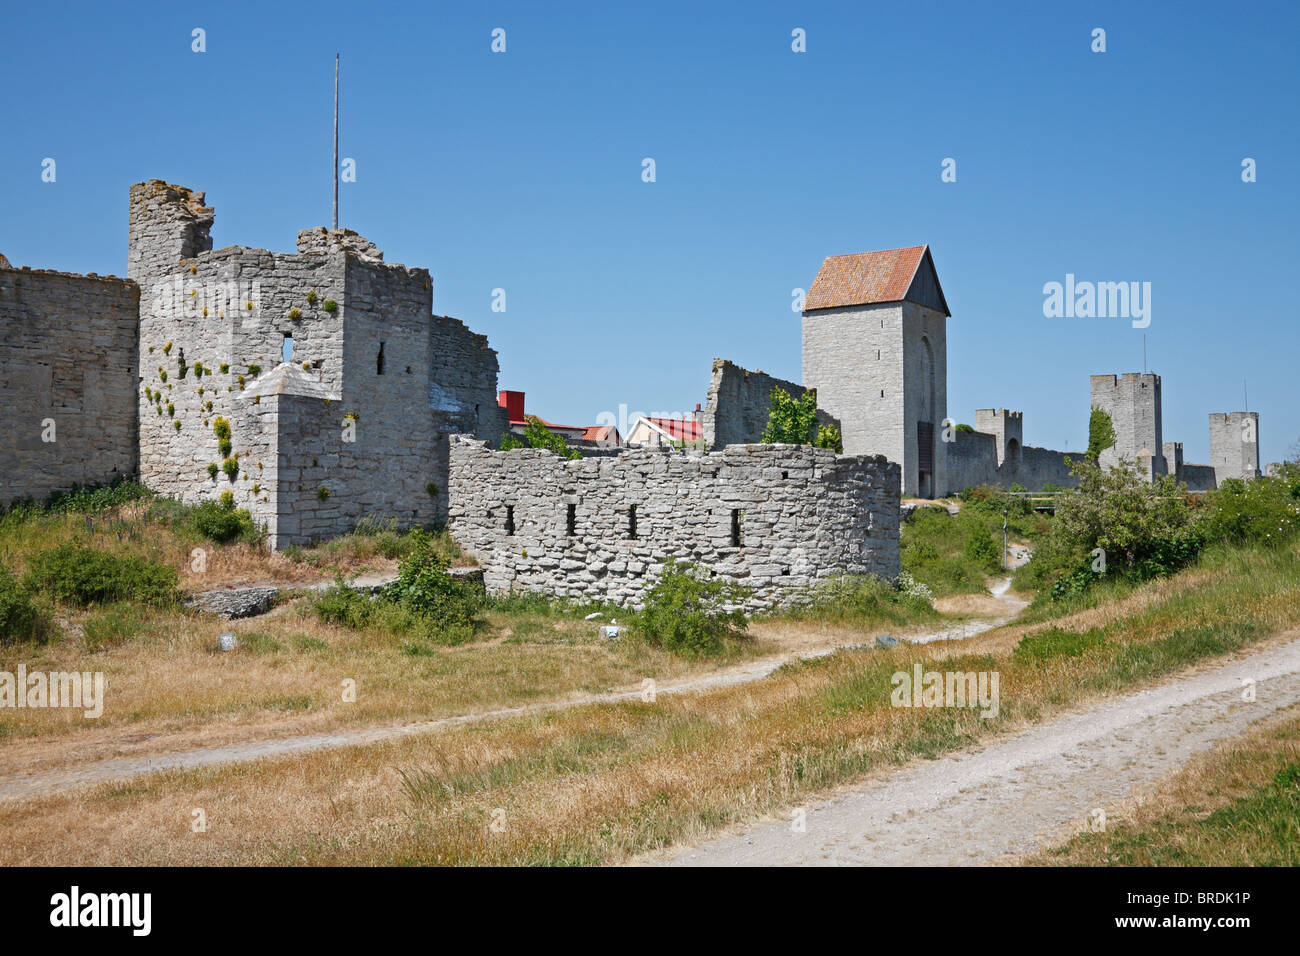 Der östliche Teil der mittelalterlichen Stadtmauer, die Stadtmauer, um die Hansestadt Visby auf der schwedischen Insel Gotland in der Ostsee. Stockfoto